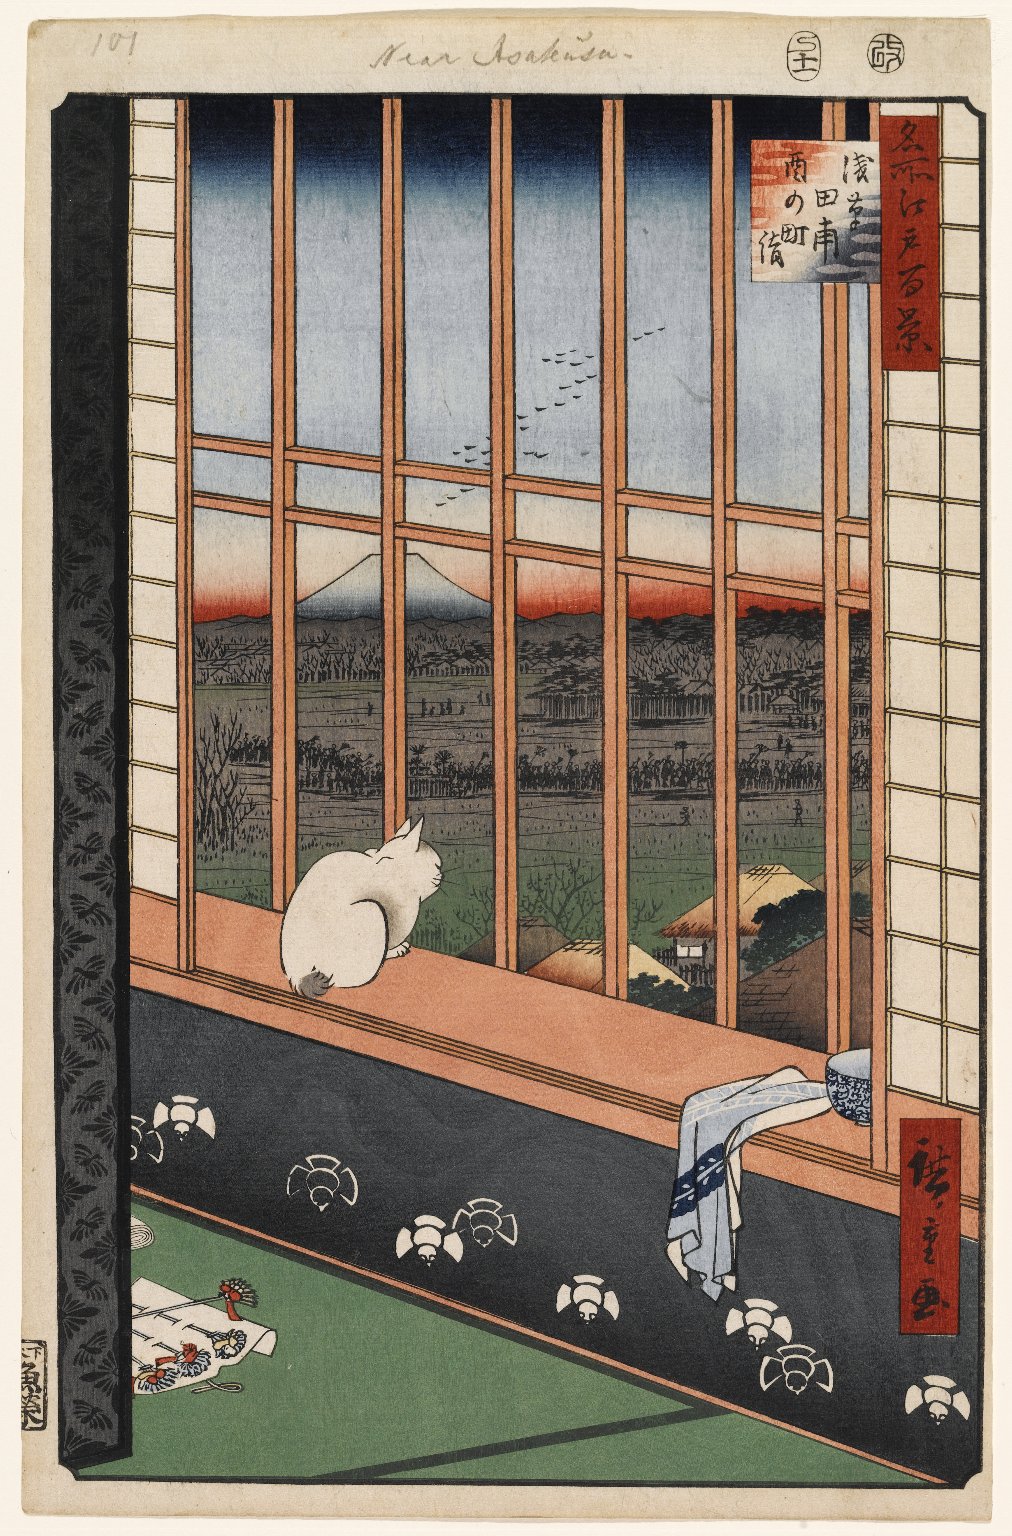 Рисовые поля Асакуса и Фестиваль Ториномати, № 101 by  Хиросигэ - 1857 - 36 x 23,5 см 